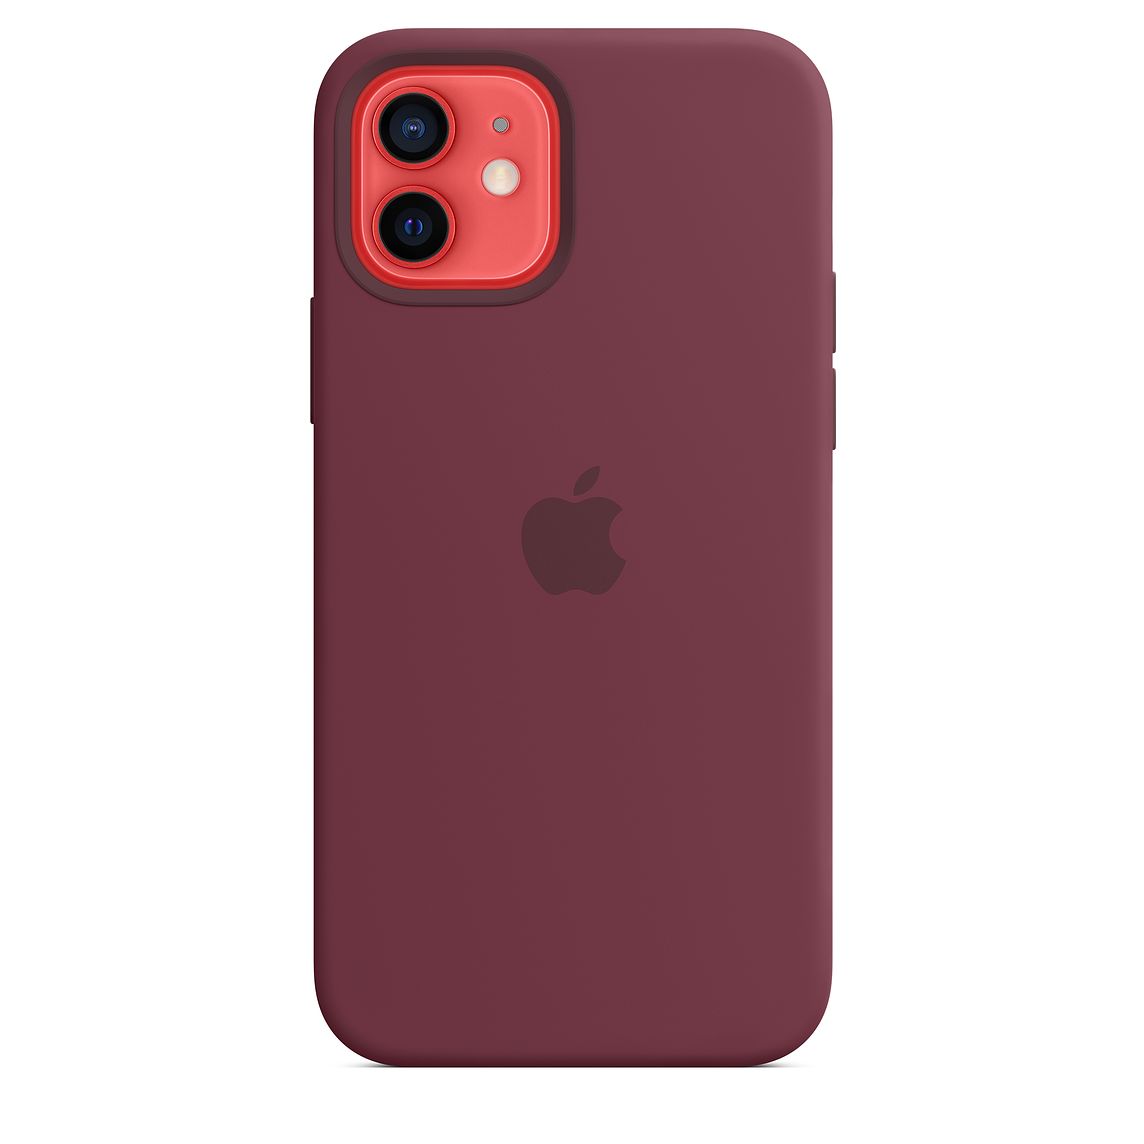 Фото — Чехол для смартфона Apple MagSafe для iPhone 12/12 Pro, cиликон, сливовый